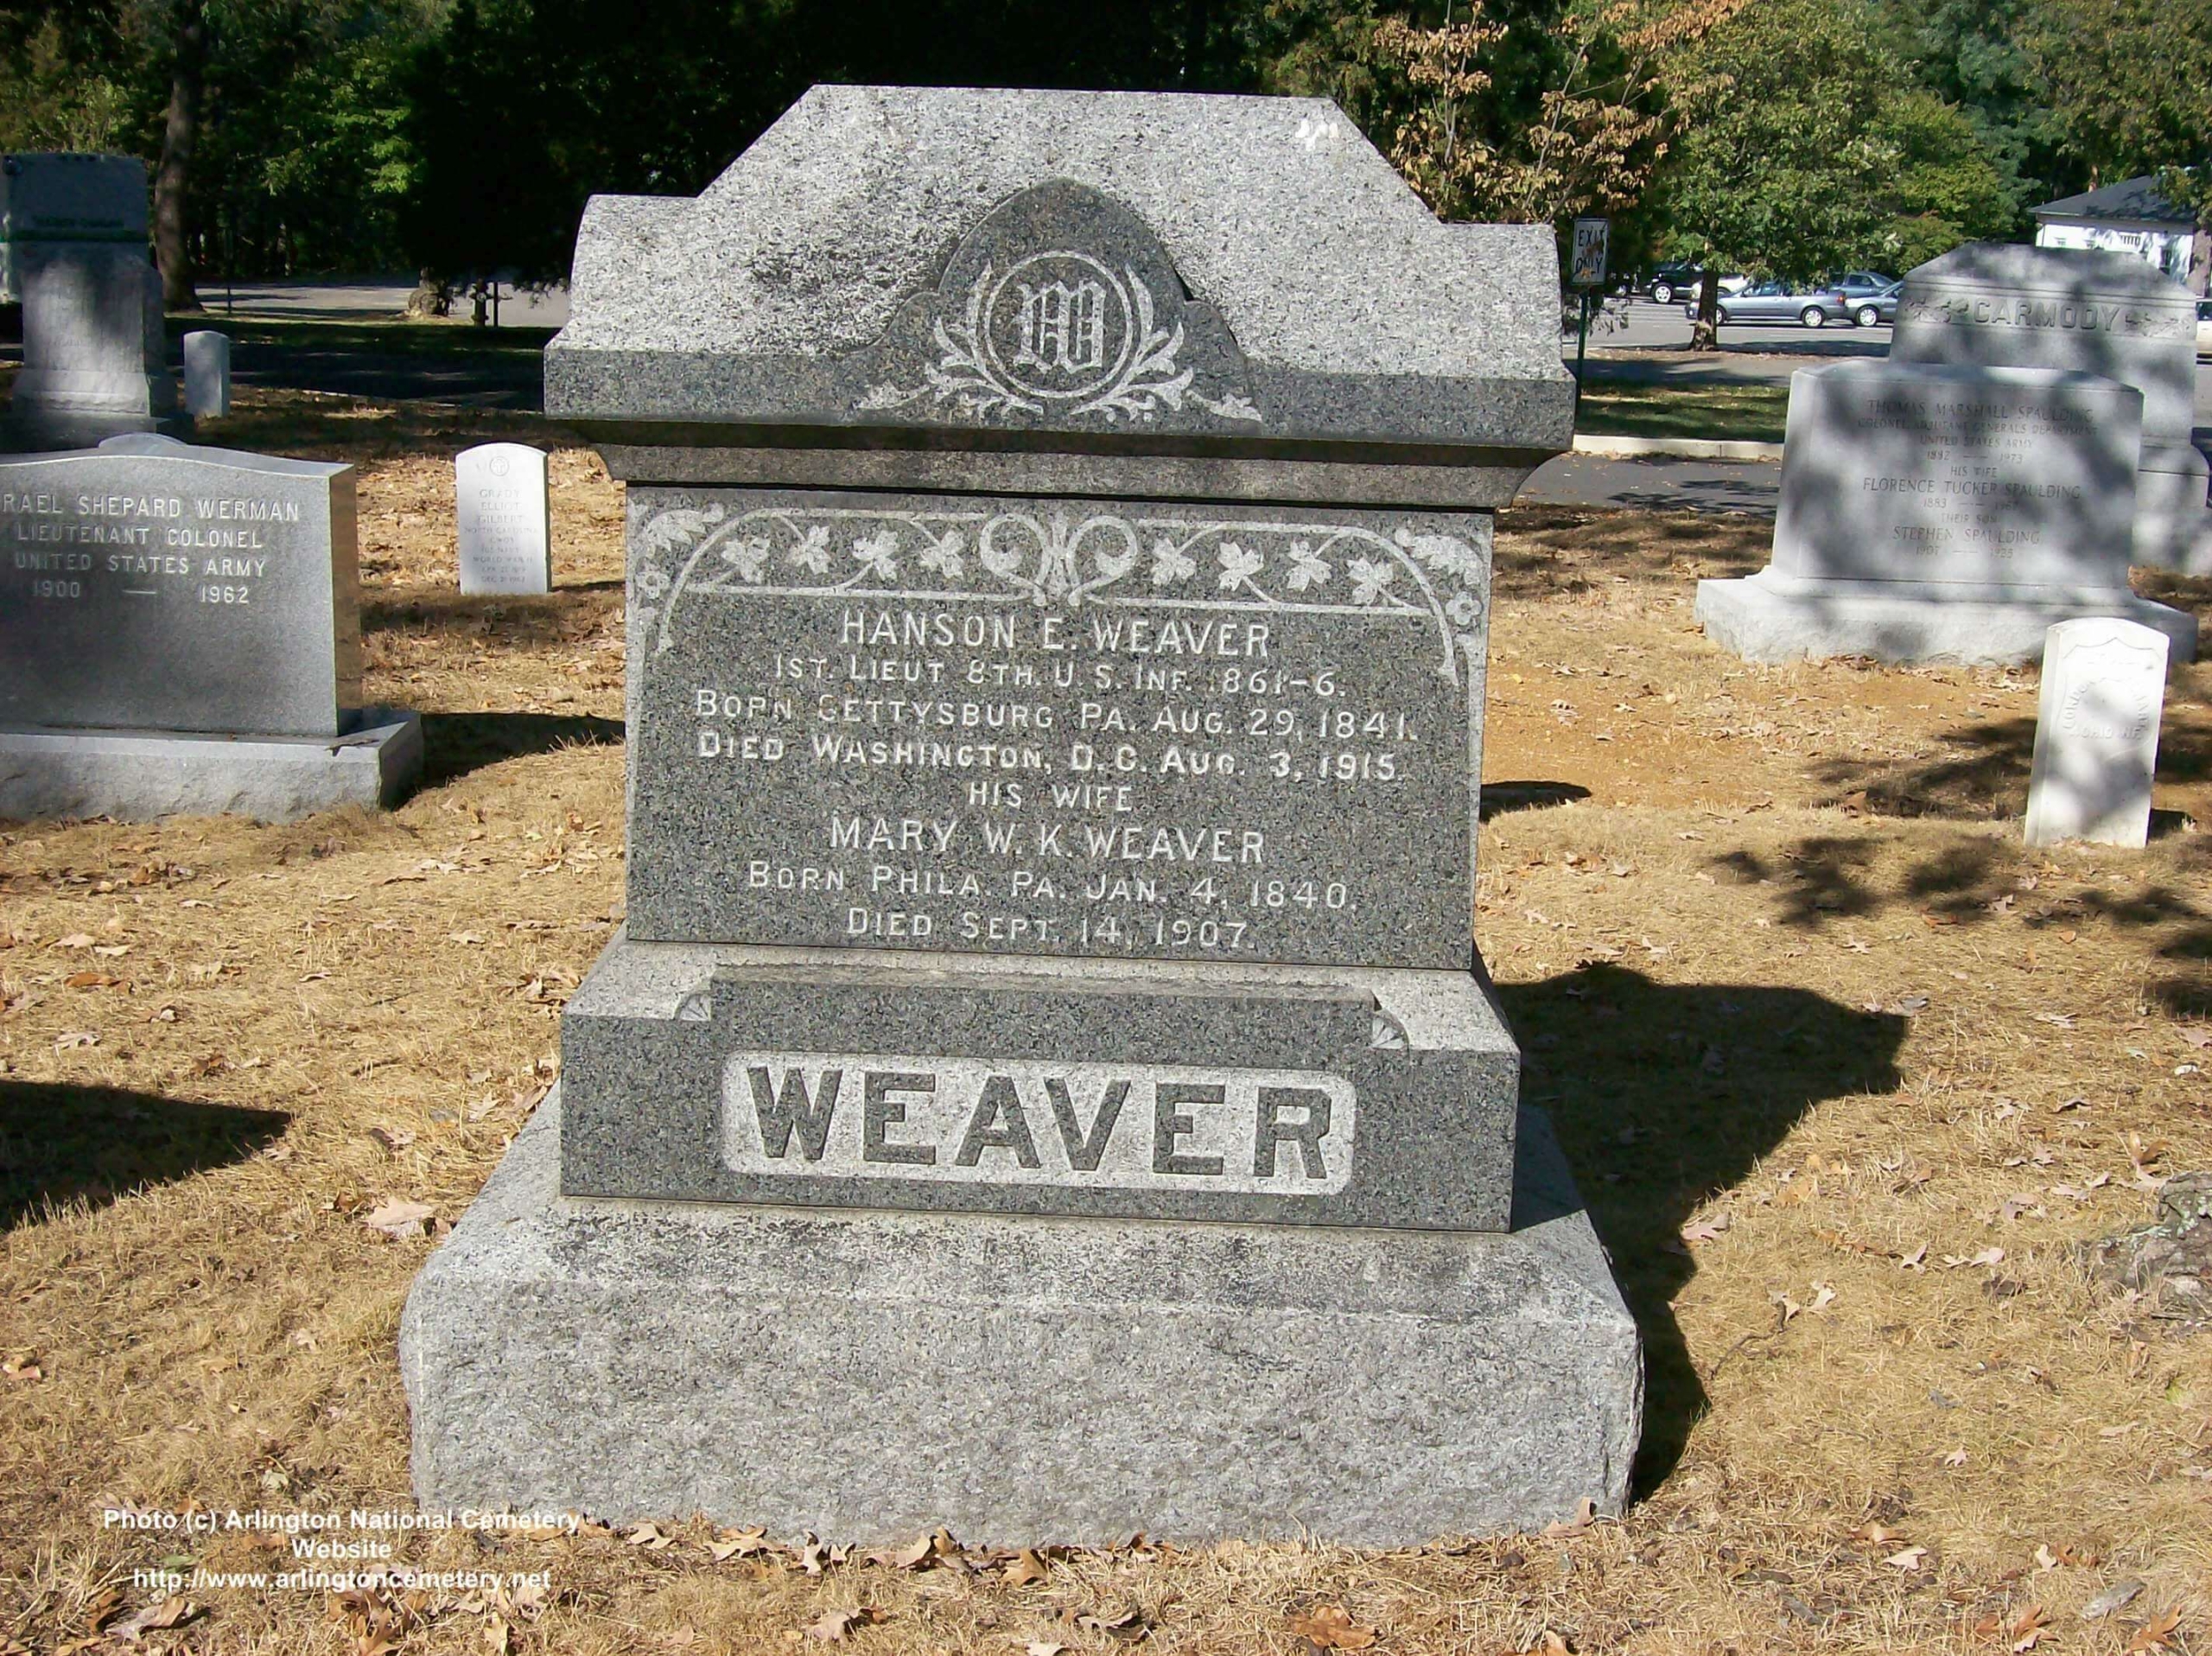 heweaver-gravesite-photo-october-2007-001